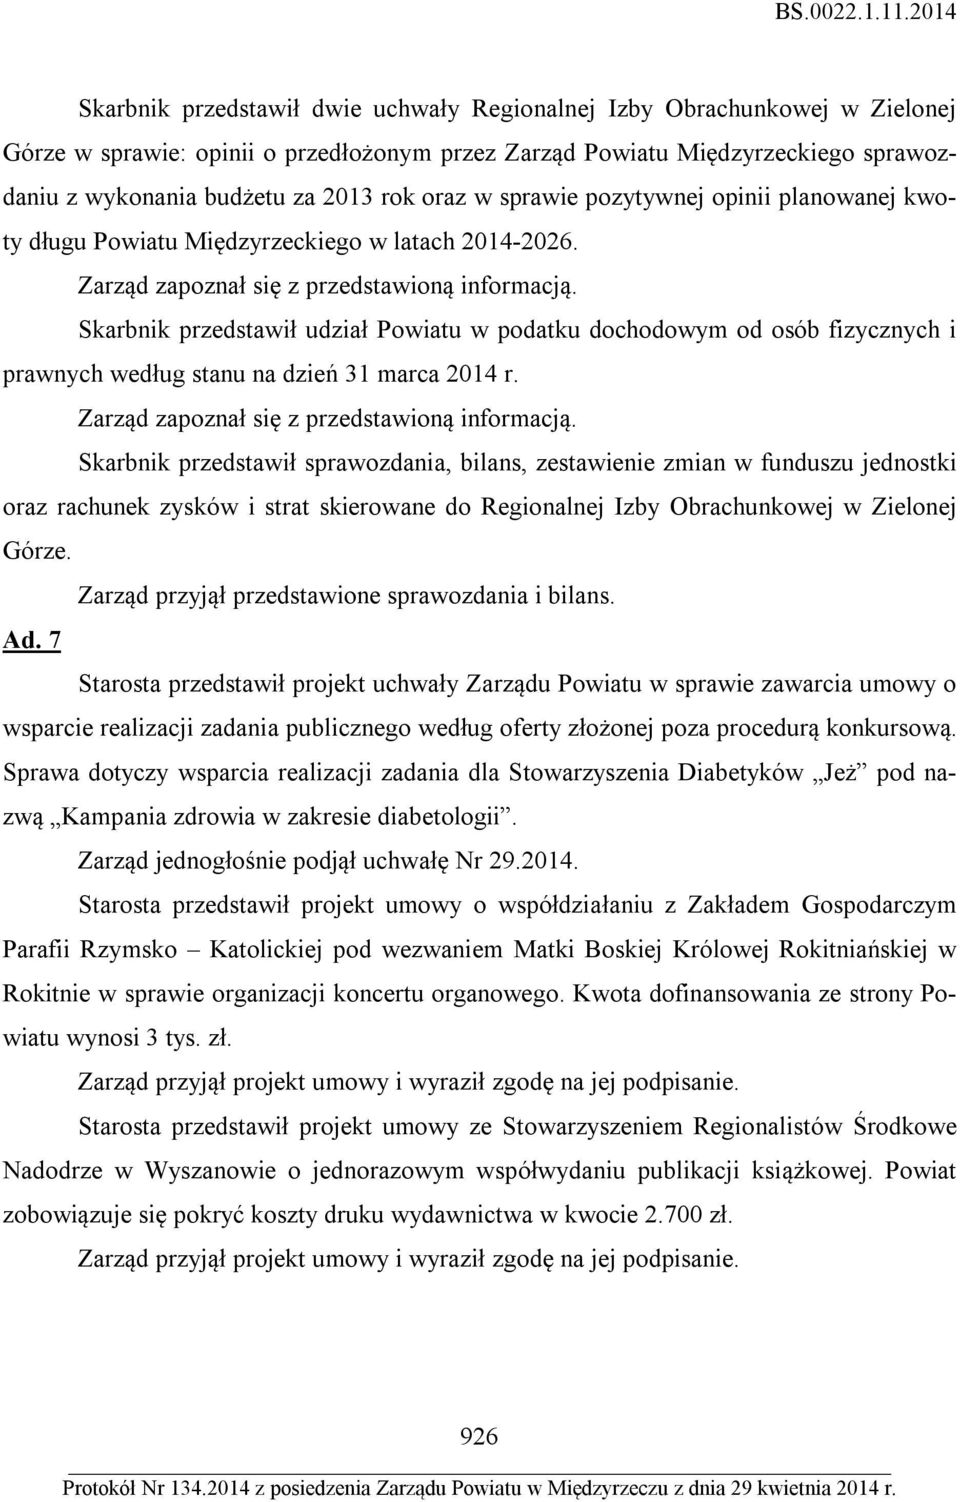 Skarbnik przedstawił udział Powiatu w podatku dochodowym od osób fizycznych i prawnych według stanu na dzień 31 marca 2014 r.